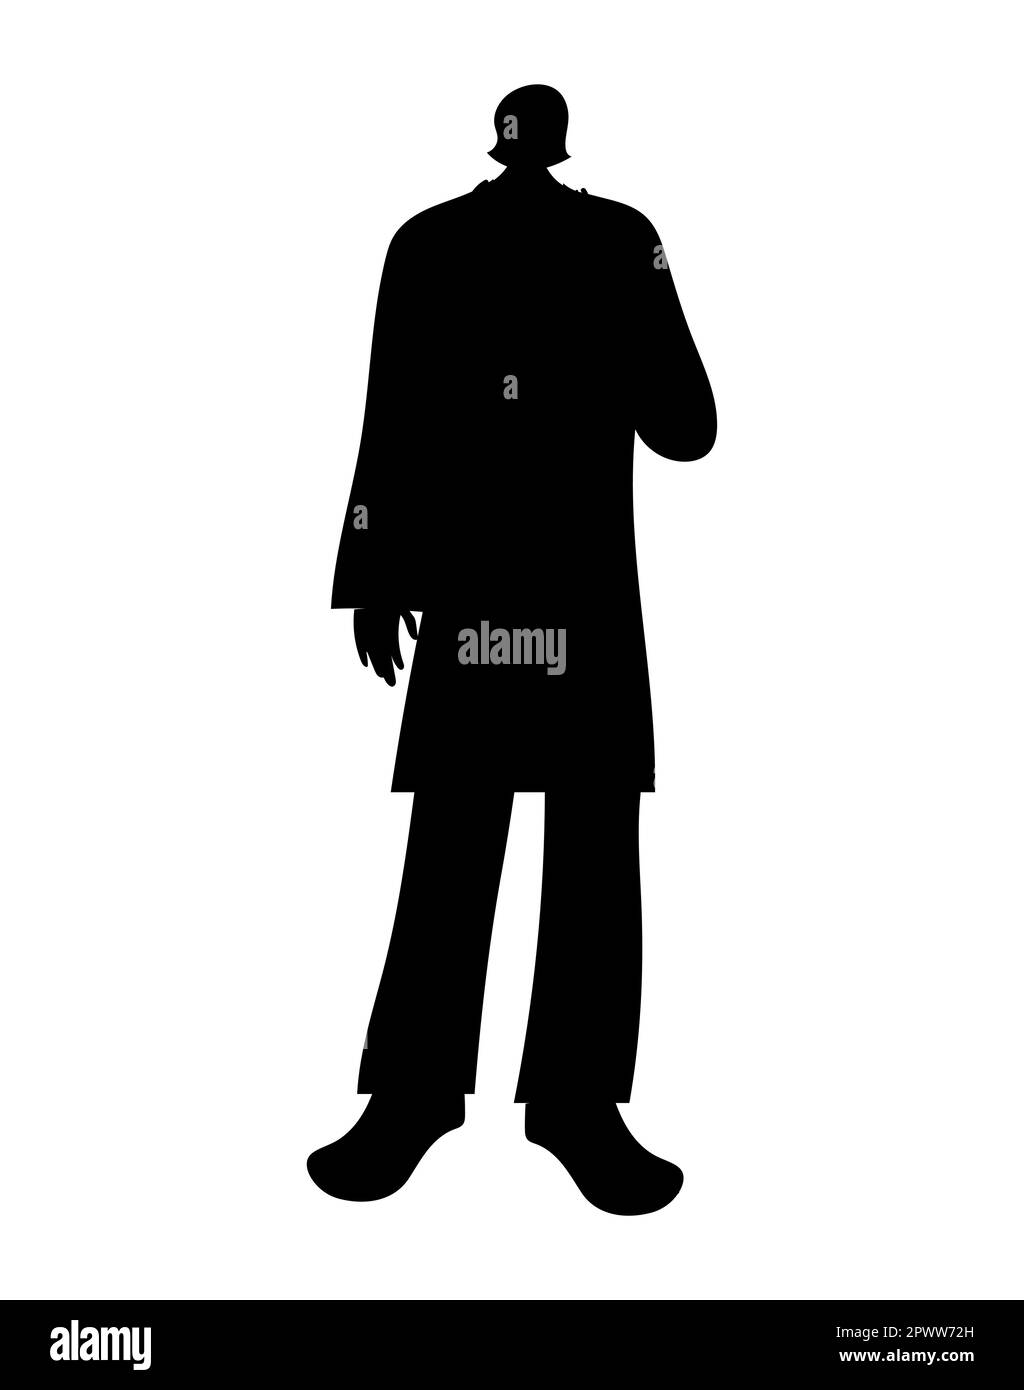 Silhouette noire d'un homme debout, illustration vectorielle de personnage masculin Illustration de Vecteur